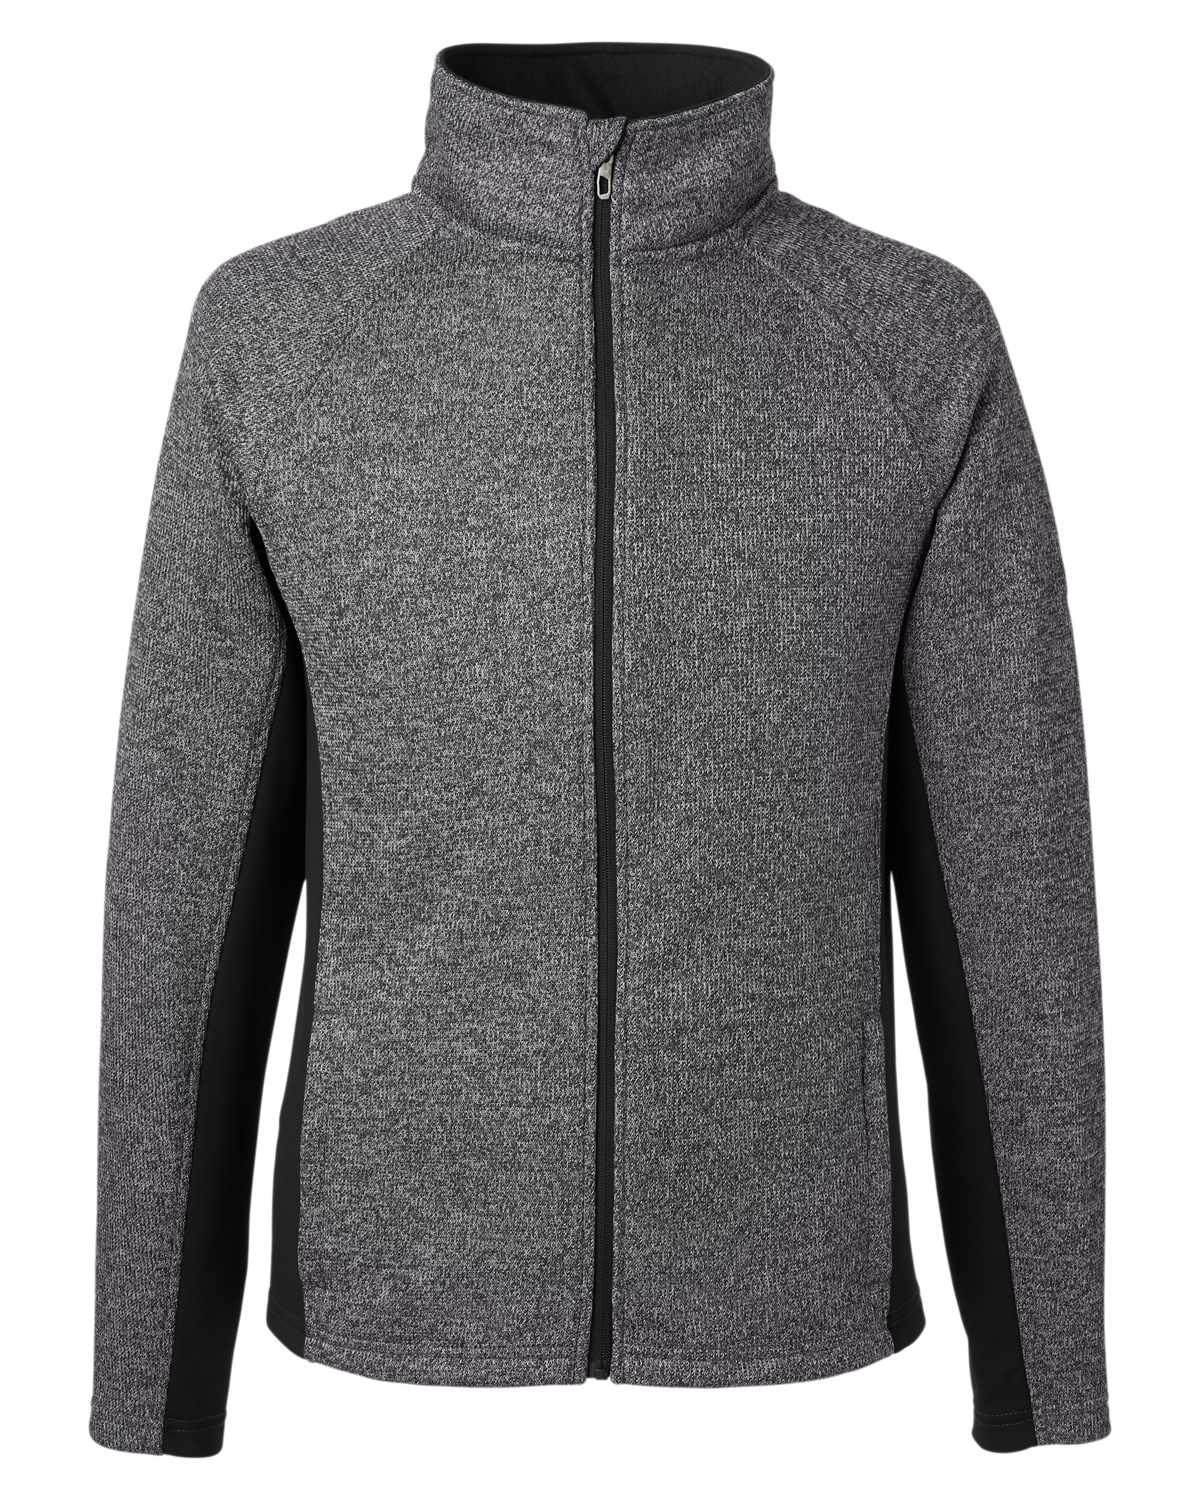 Picture of Spyder Men's Constant Full-Zip Sweater Fleece Jacket